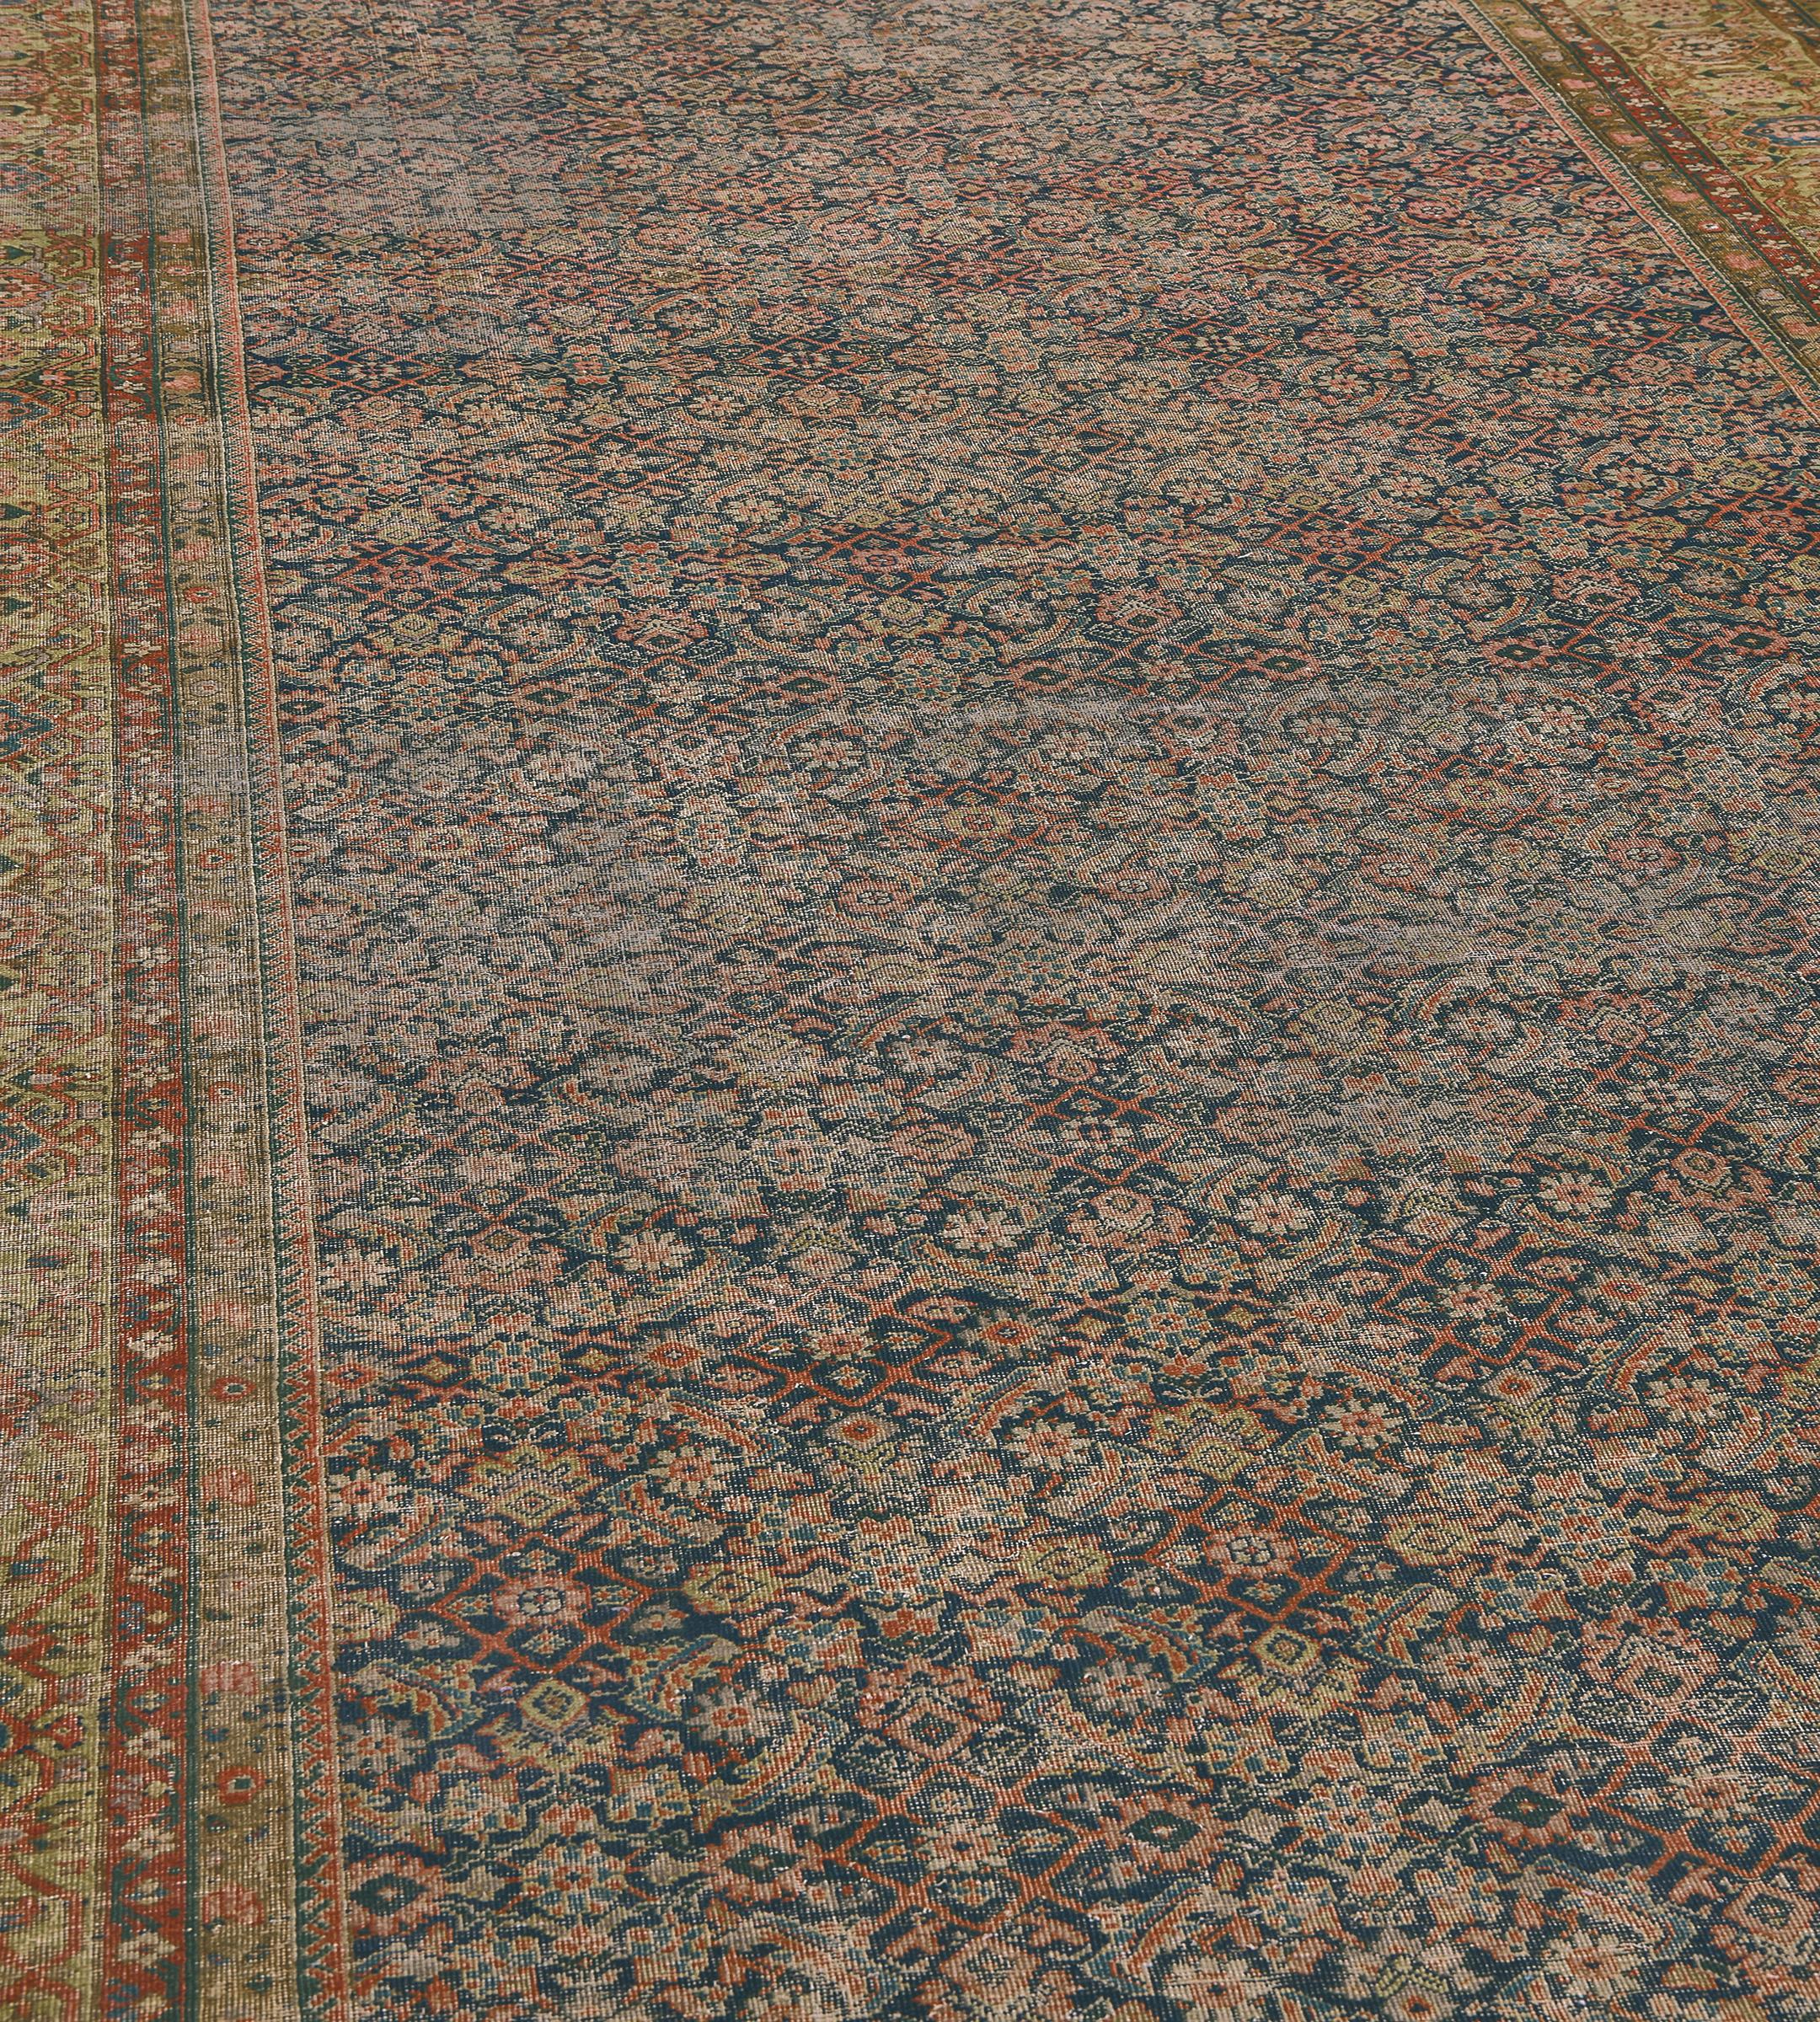 Ce tapis persan Fereghan traditionnel tissé à la main présente un champ herati indigo profond ombré, dans une bordure tortue-palmette camel délavée, entre une profusion de délicates bandes de vignes florales lacées.